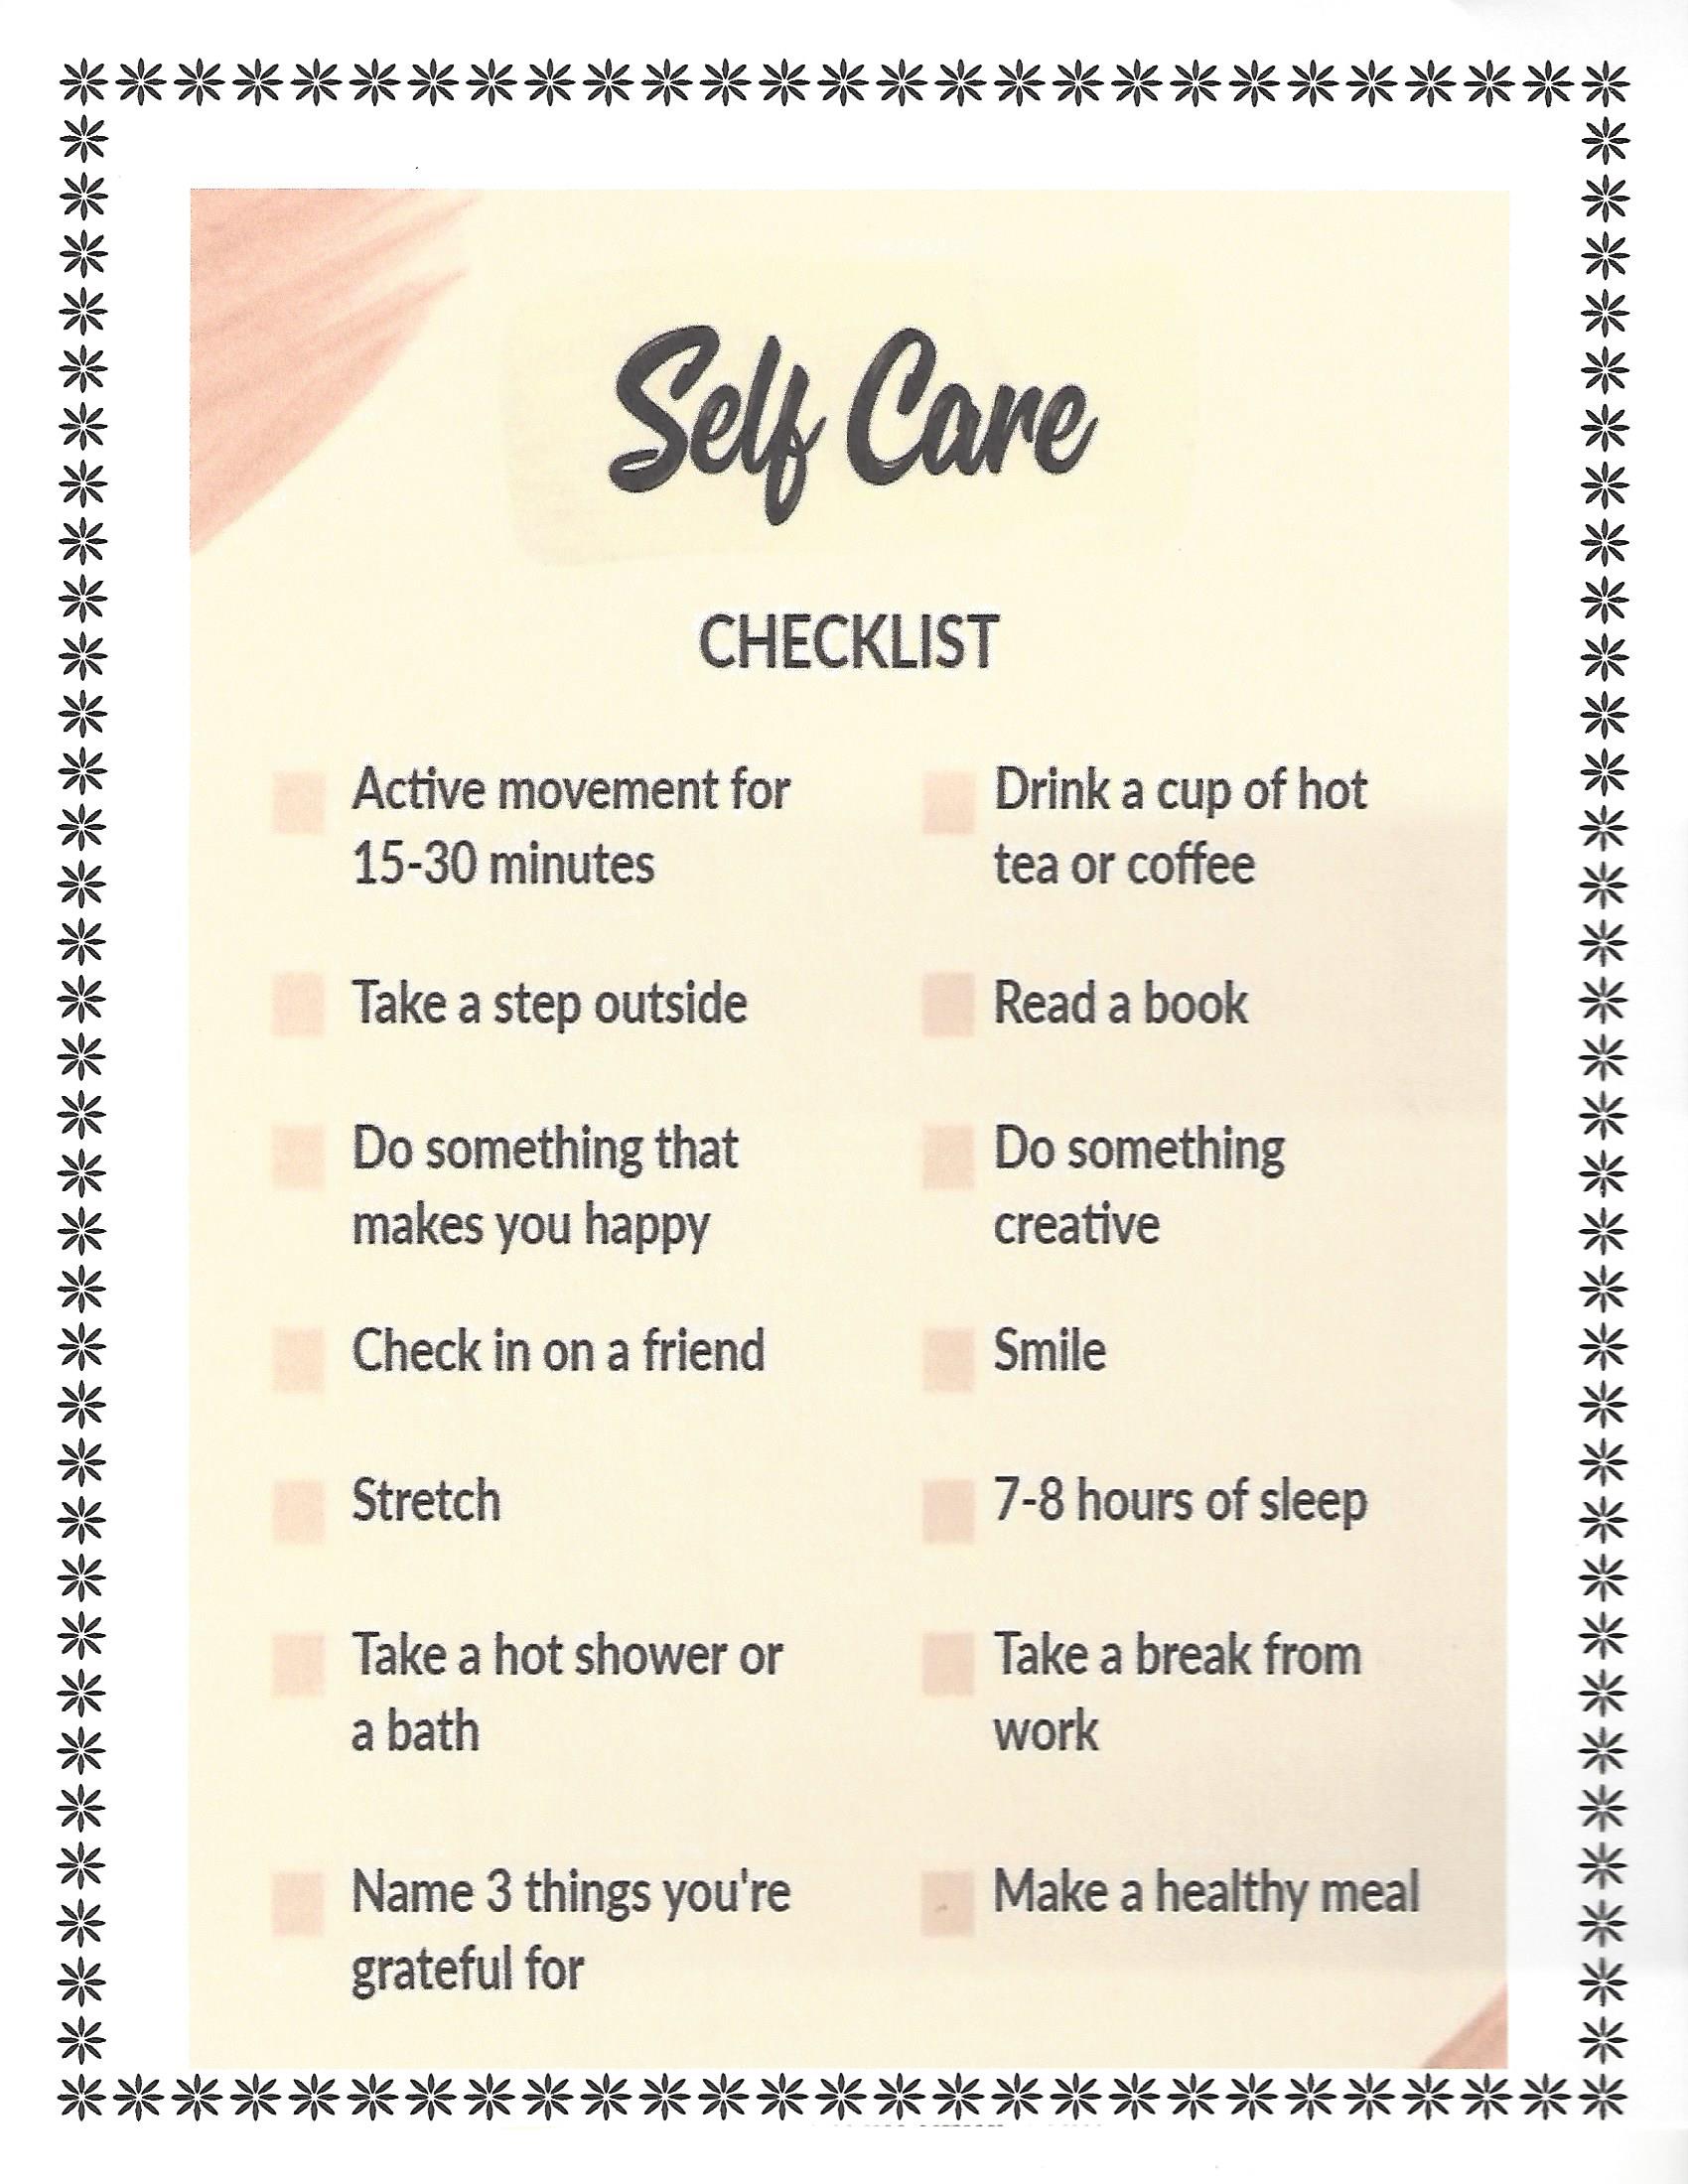 Self-Care Checklist 1